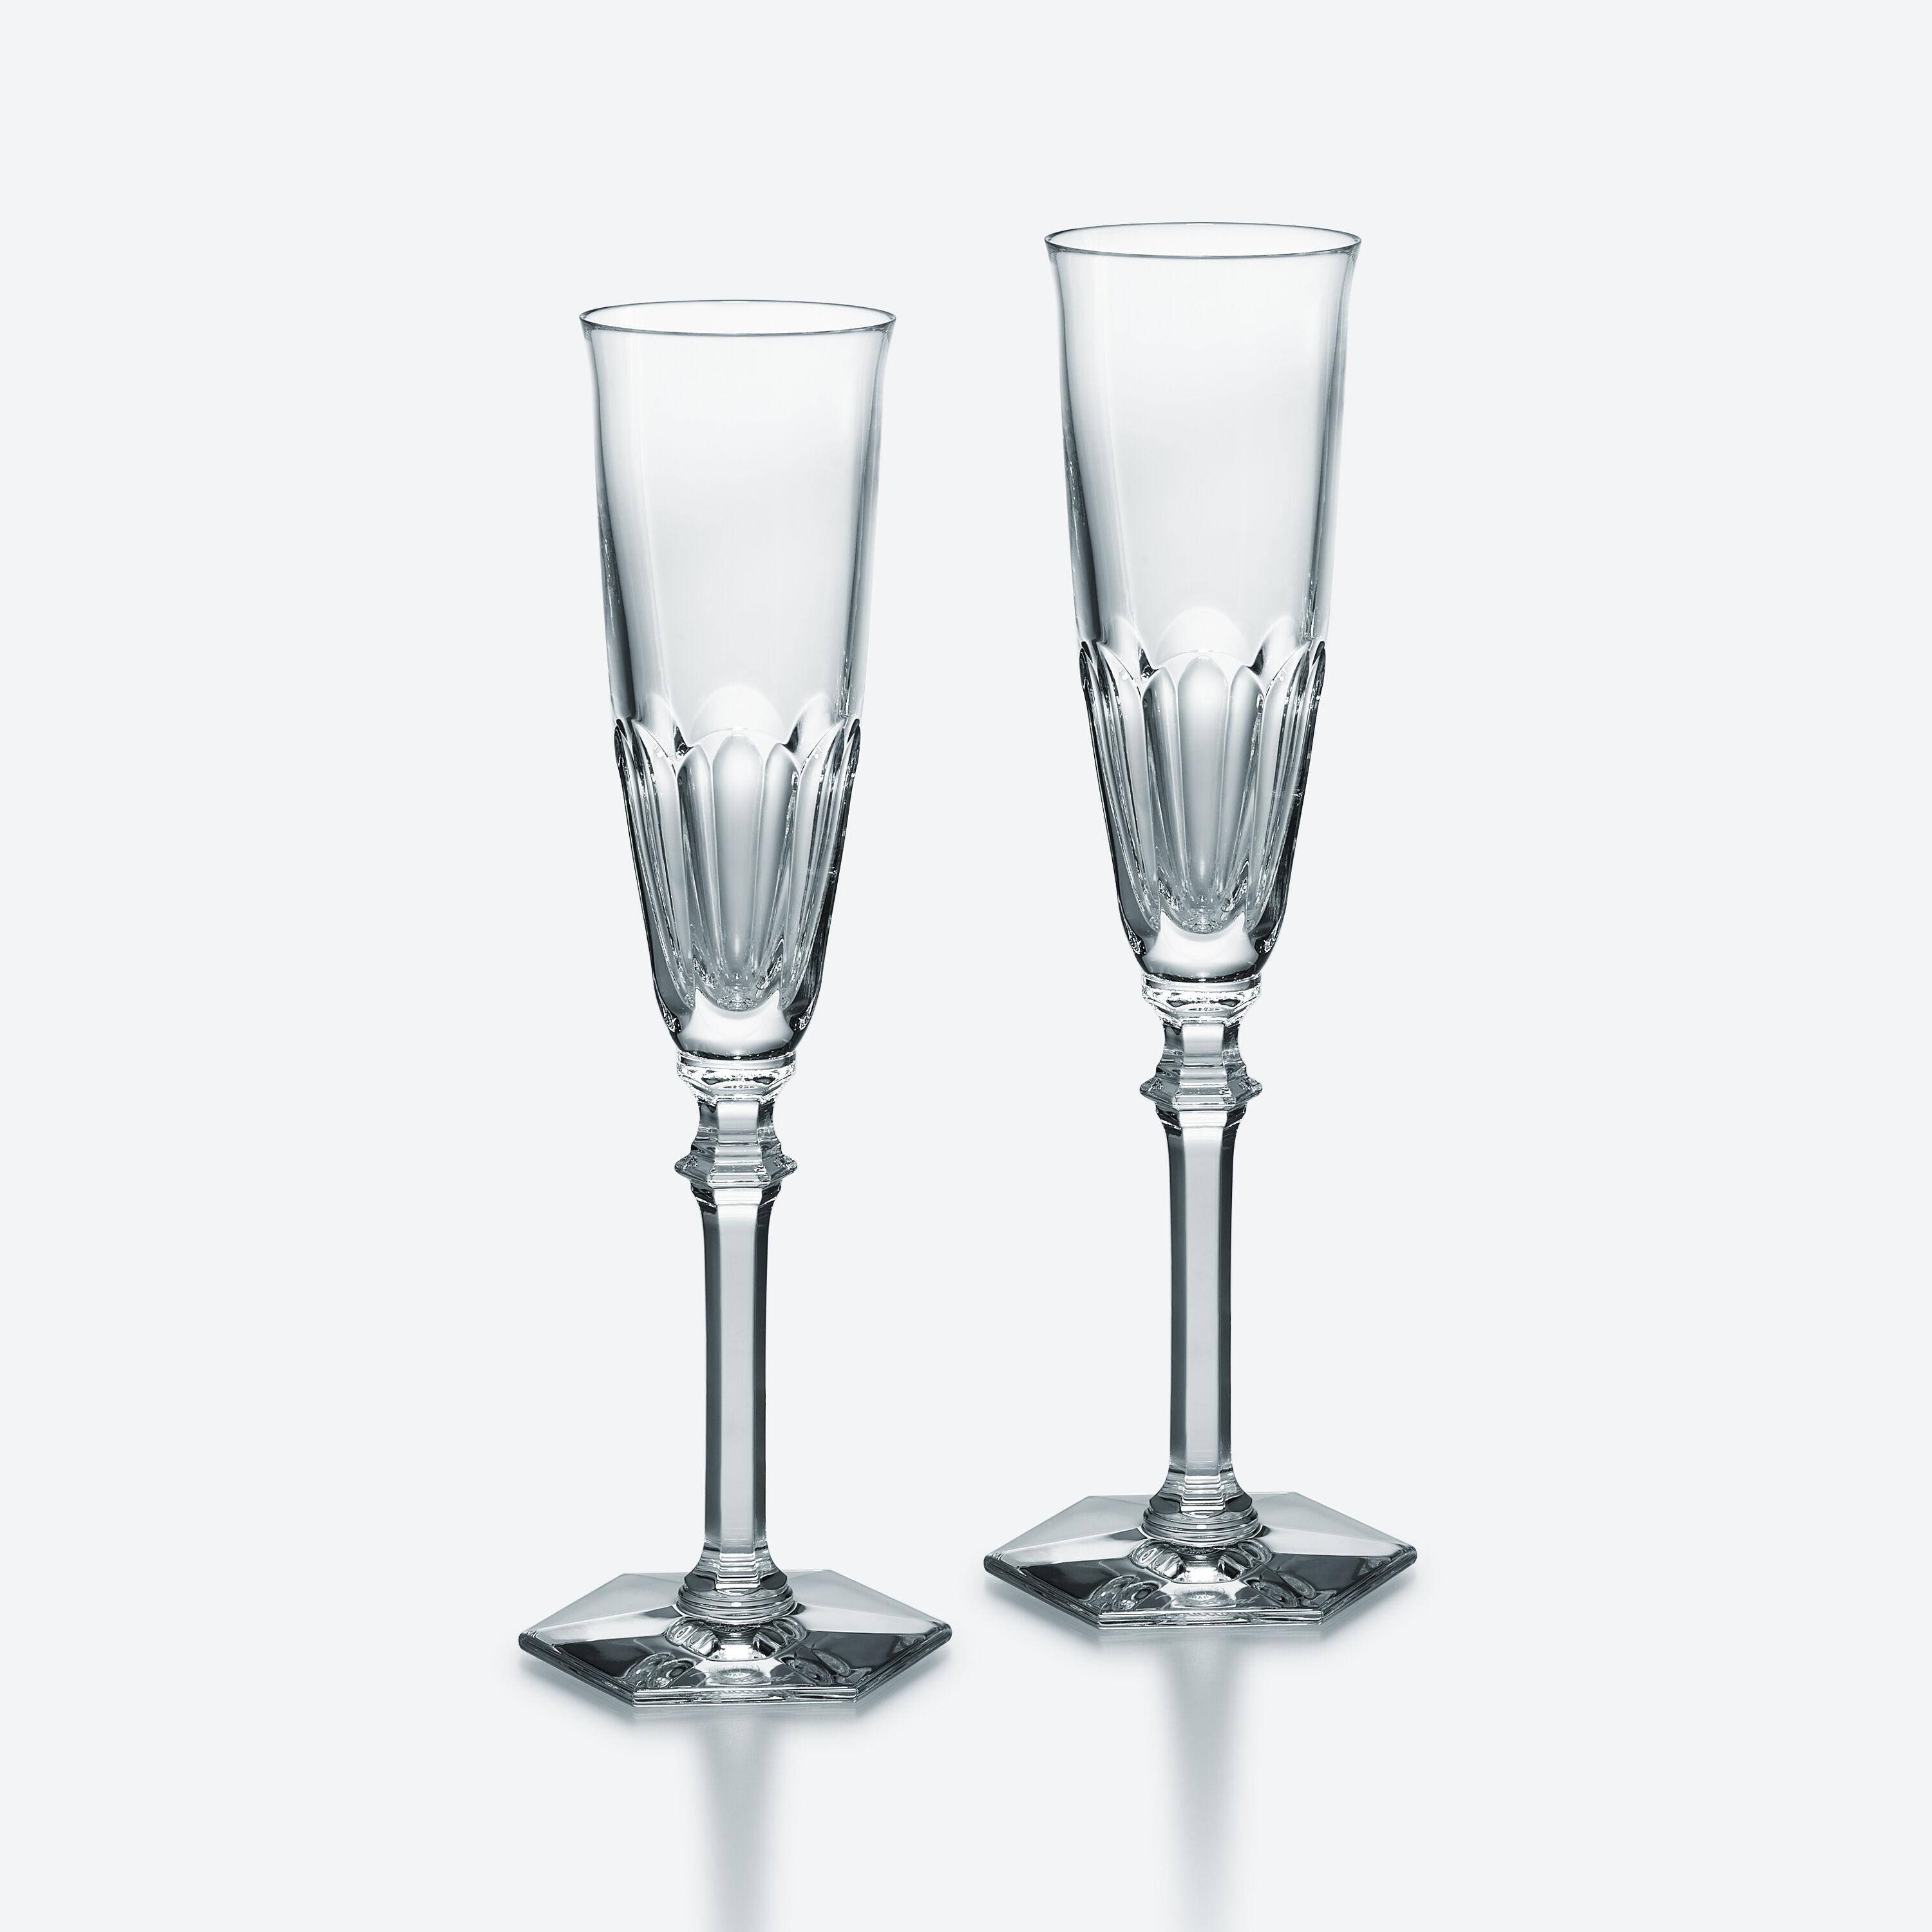 バカラ グラス ● アルクール ワイン グラス 2客12.5cm素材ガラス